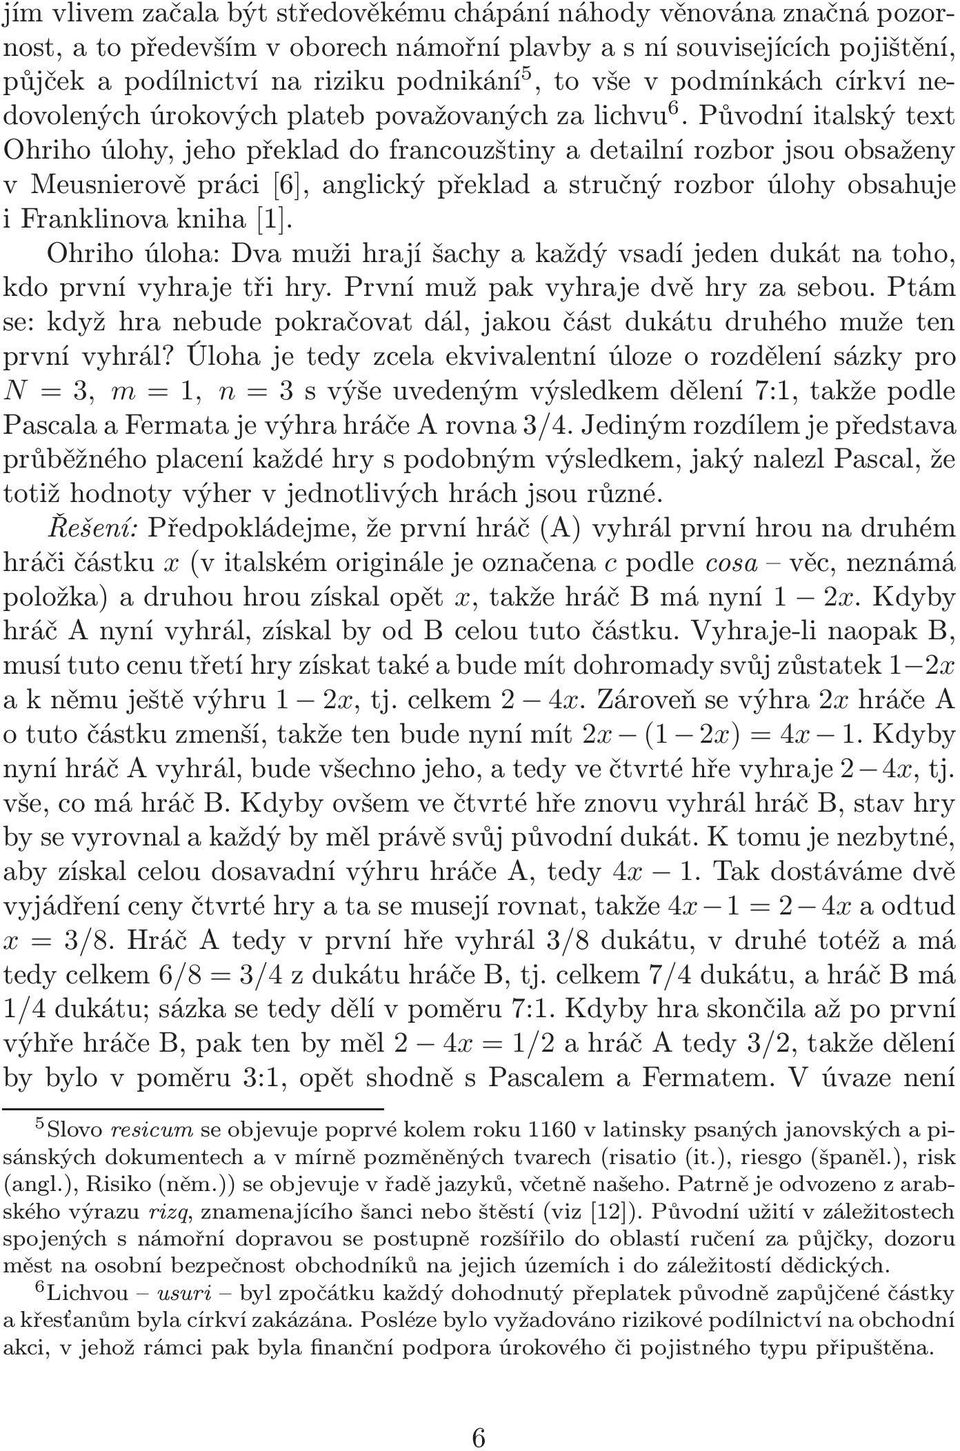 Původníitalskýtext Ohriho úlohy, jeho překlad do francouzštiny a detailní rozbor jsou obsaženy v Meusnierově práci[6], anglický překlad a stručný rozbor úlohy obsahuje i Franklinova kniha[1].